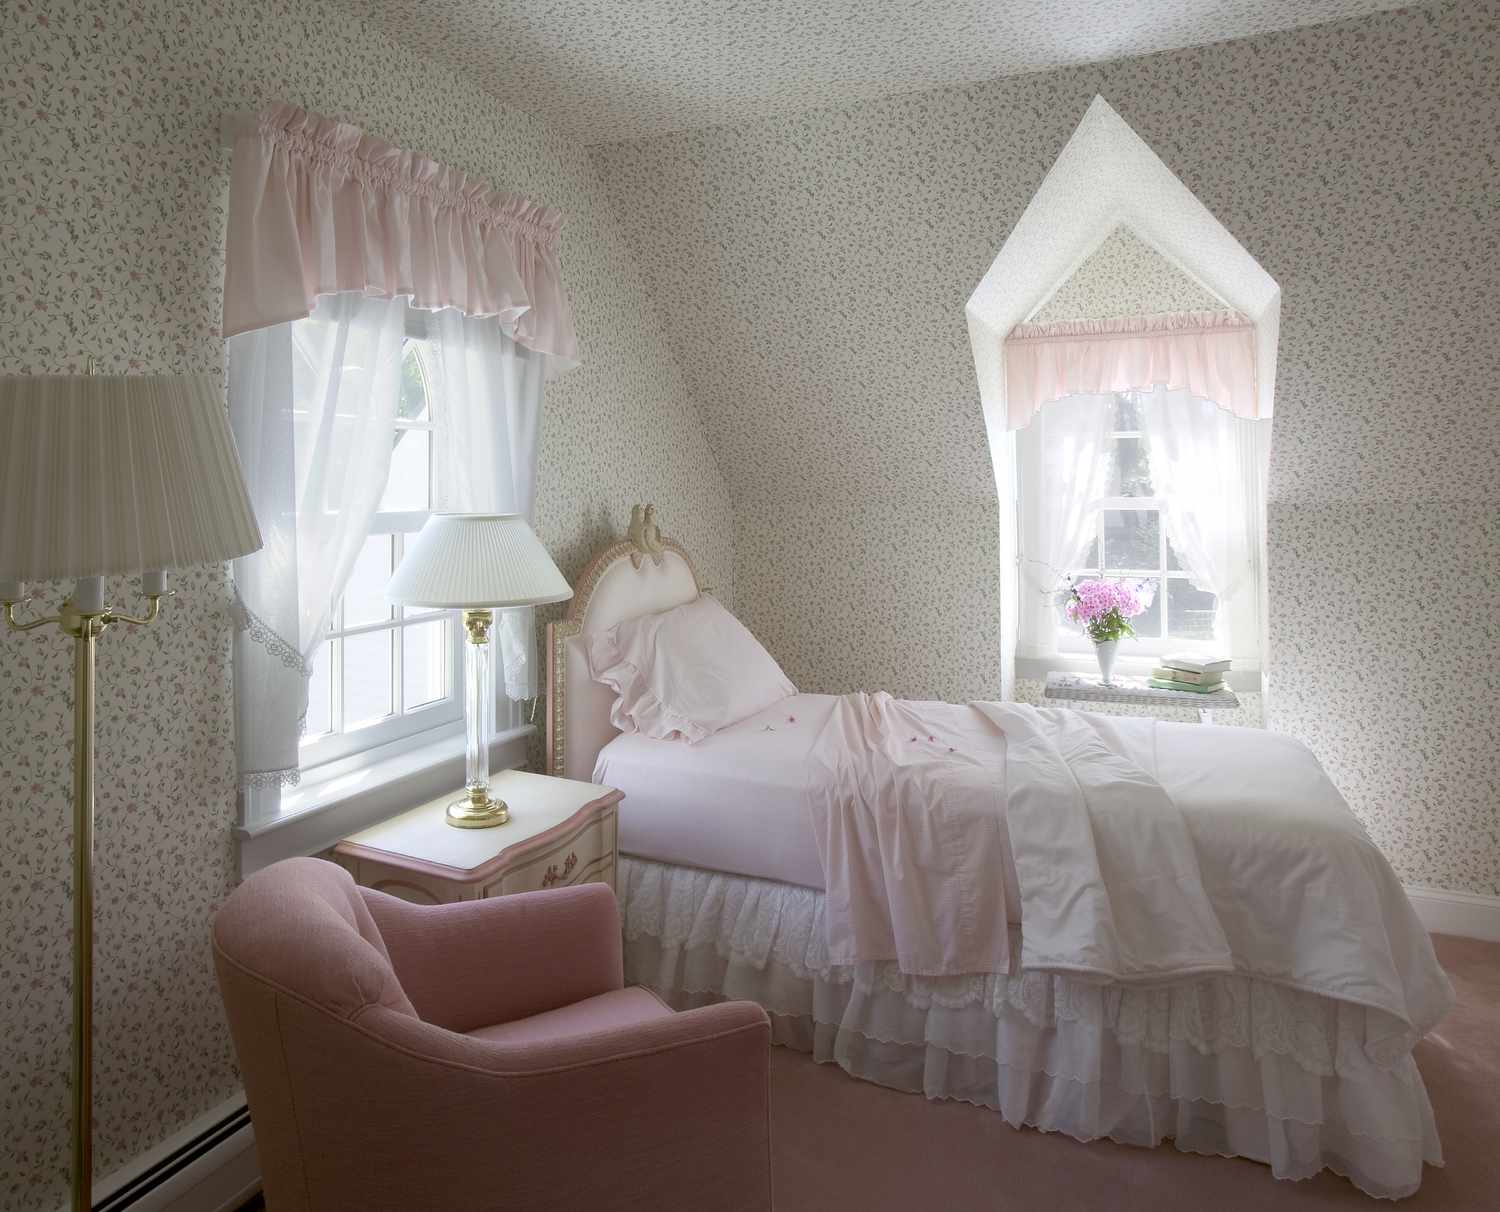 Seitenansicht eines eleganten Einzelbetts in einem klassischen Schlafzimmer